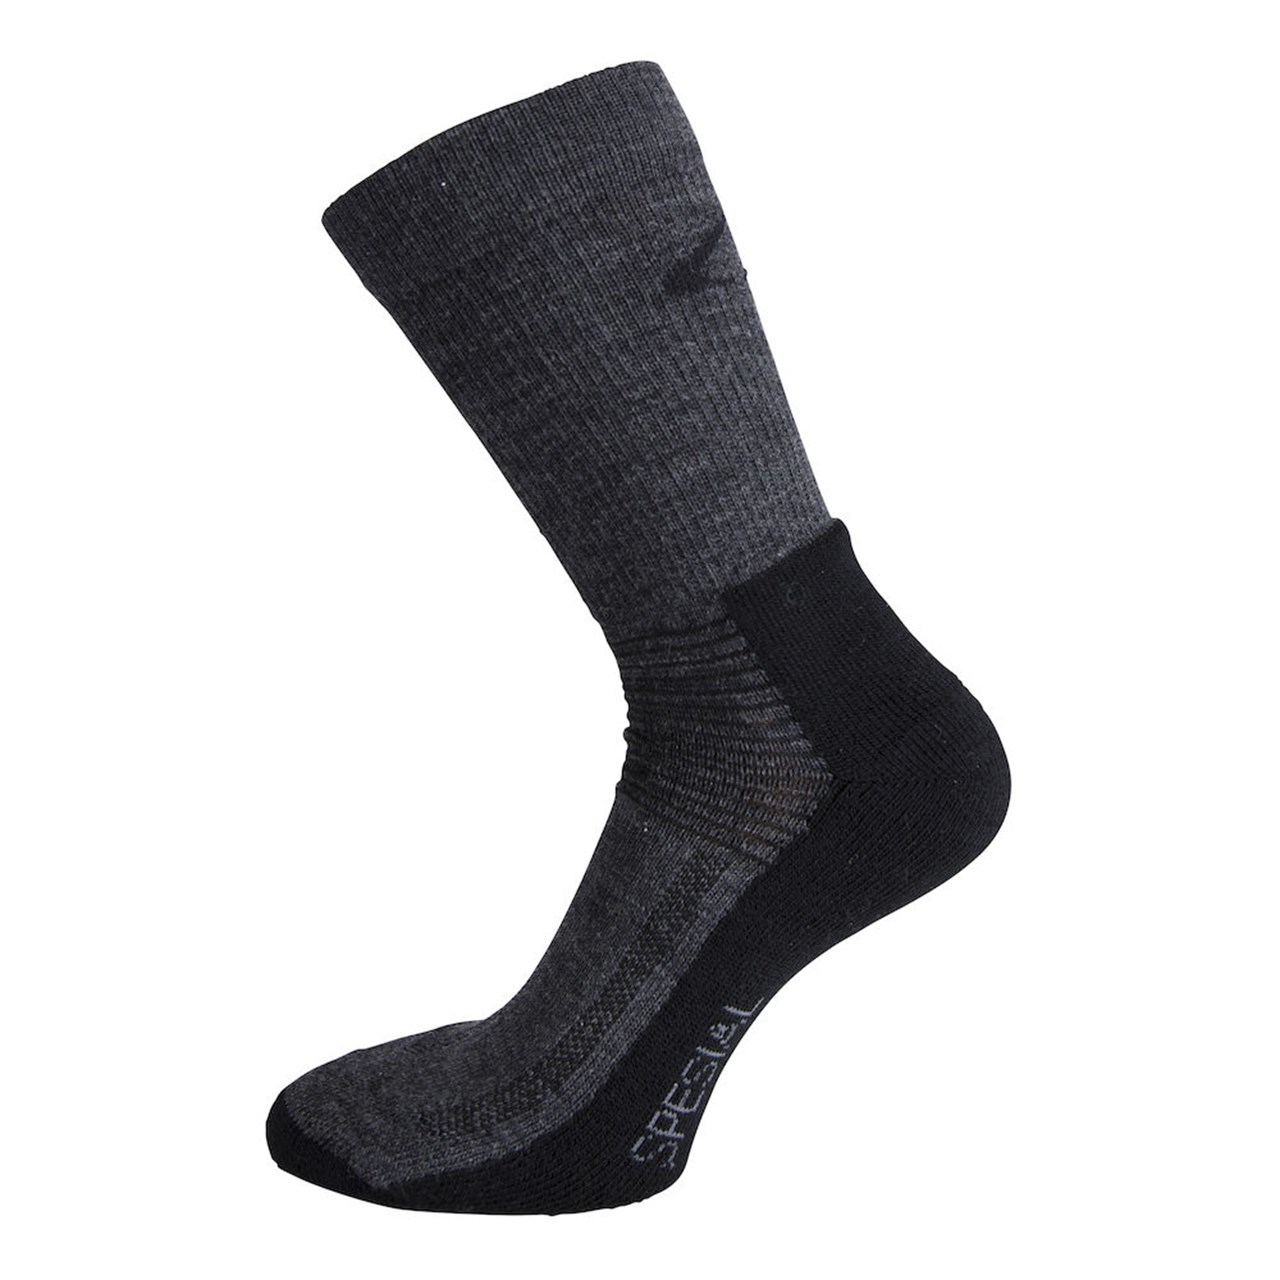 Ulvang Rav Spesial Sock Charcoal Melange/Black